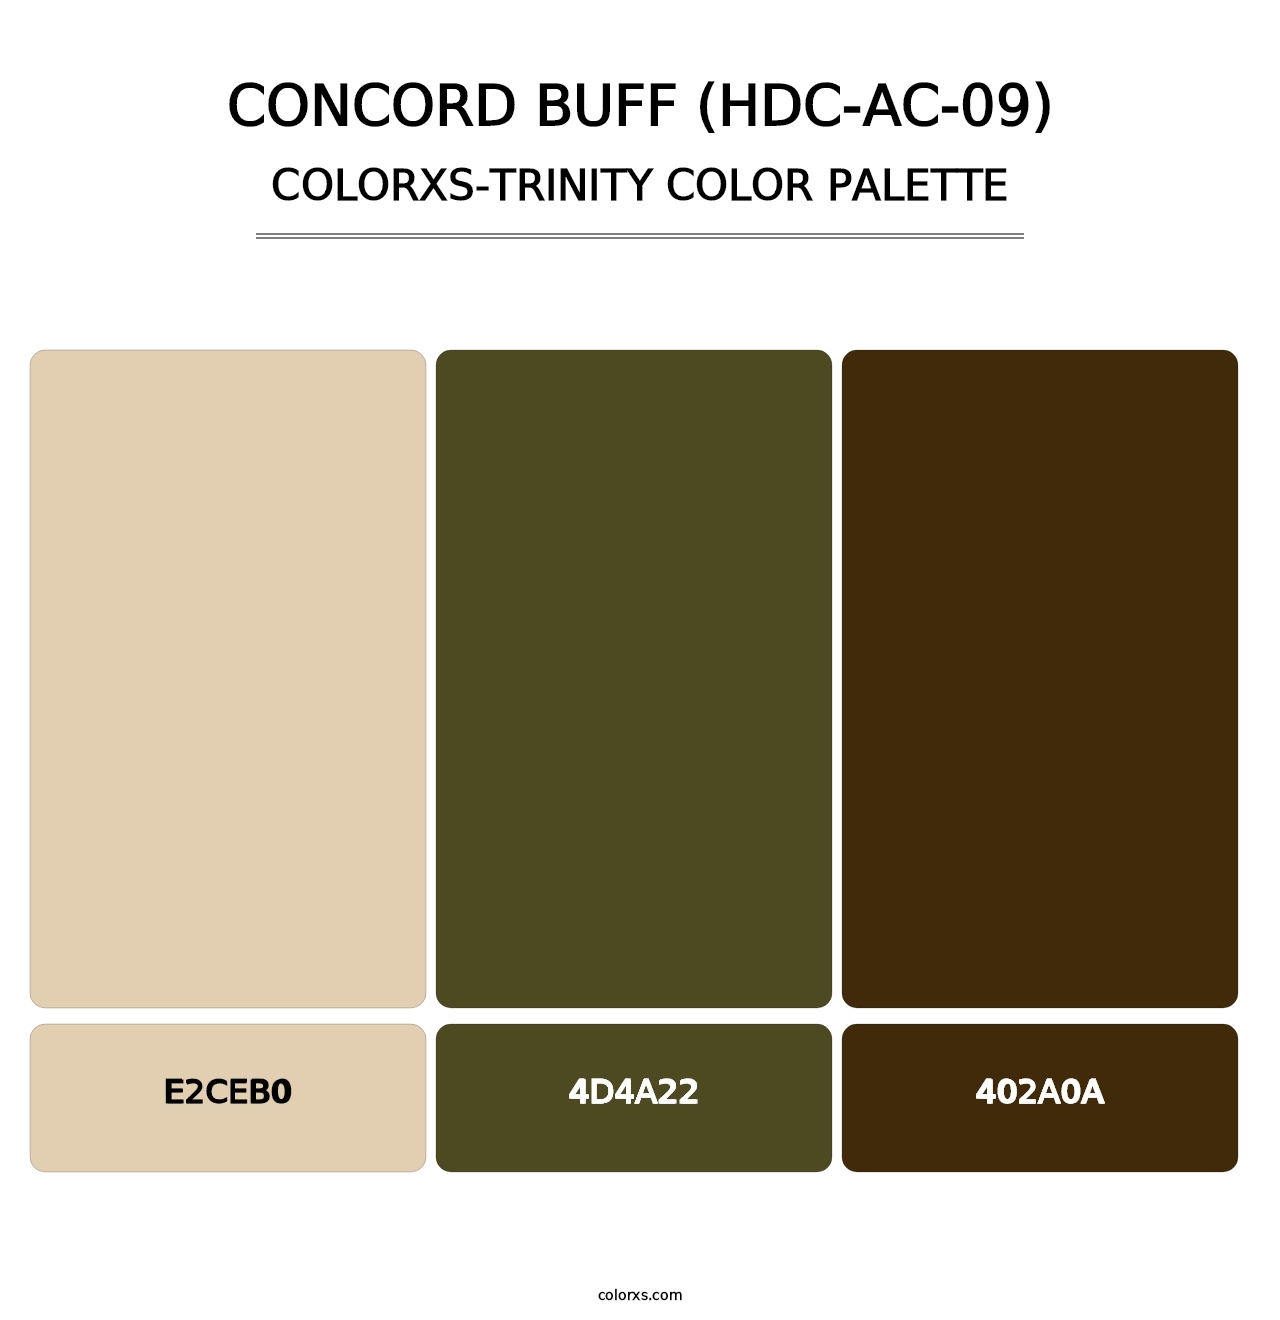 Concord Buff (HDC-AC-09) - Colorxs Trinity Palette